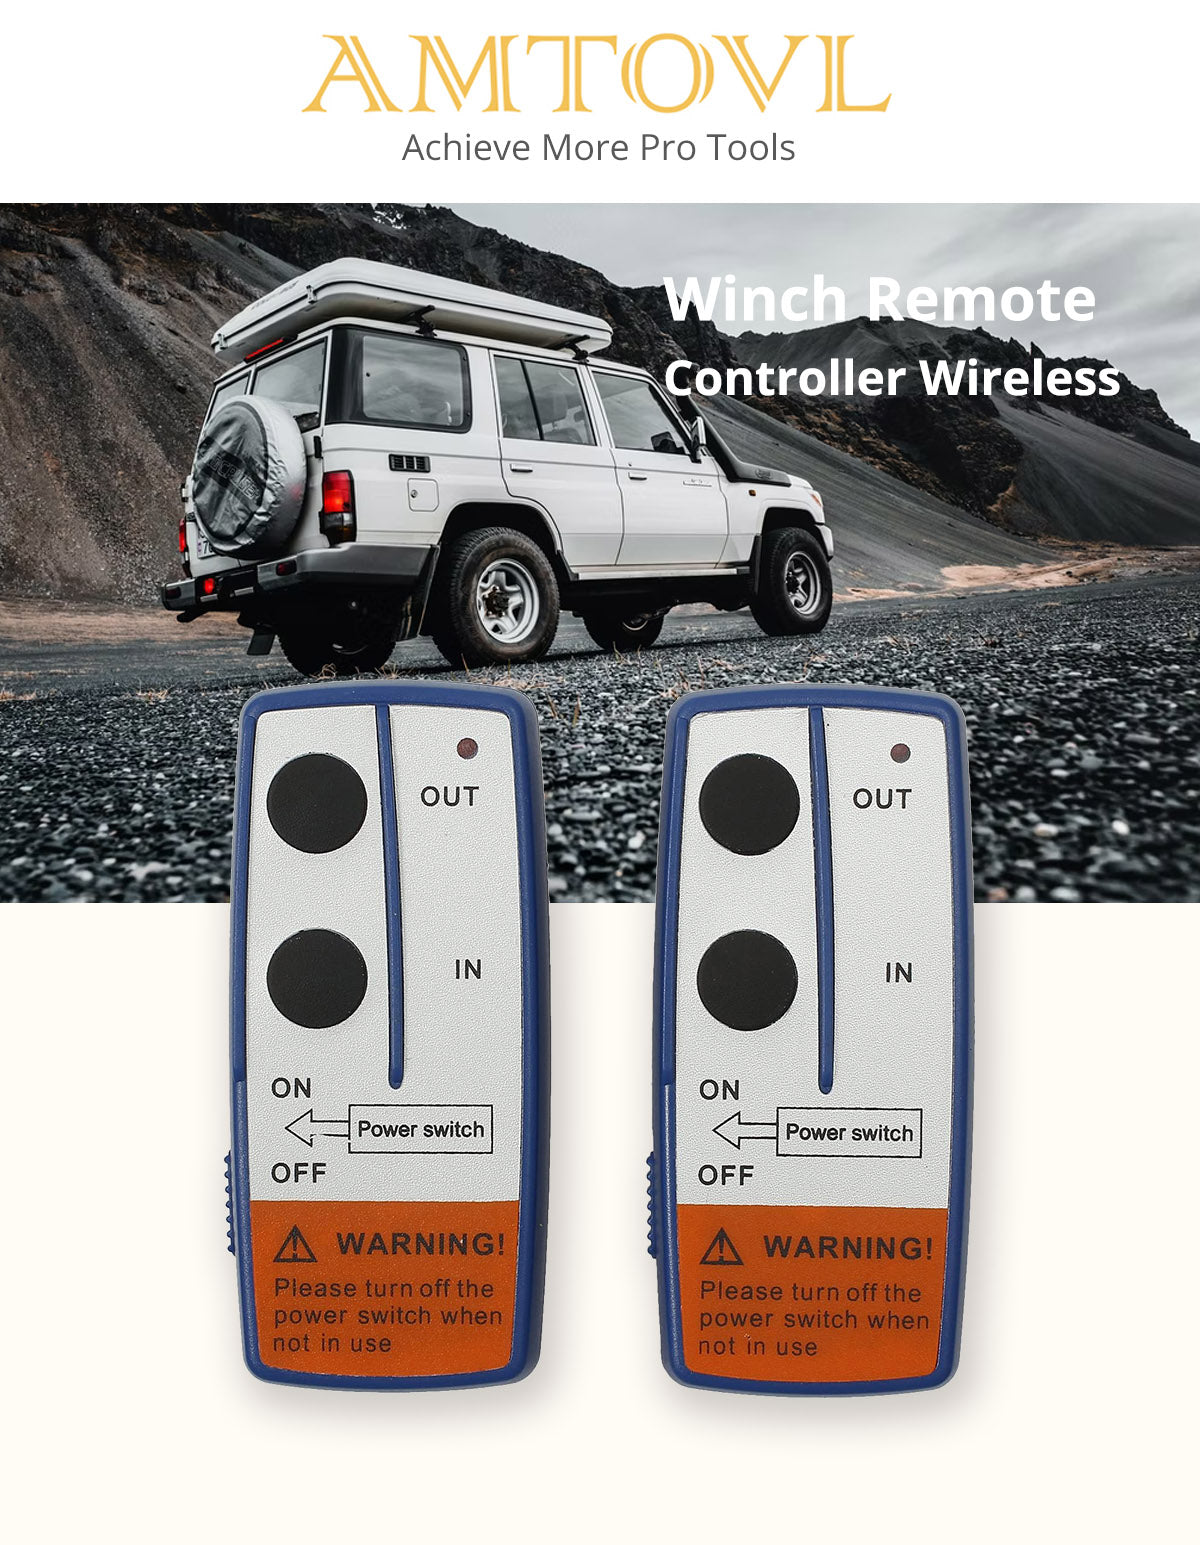 AMTOVL Winch Remote Controller Wireless